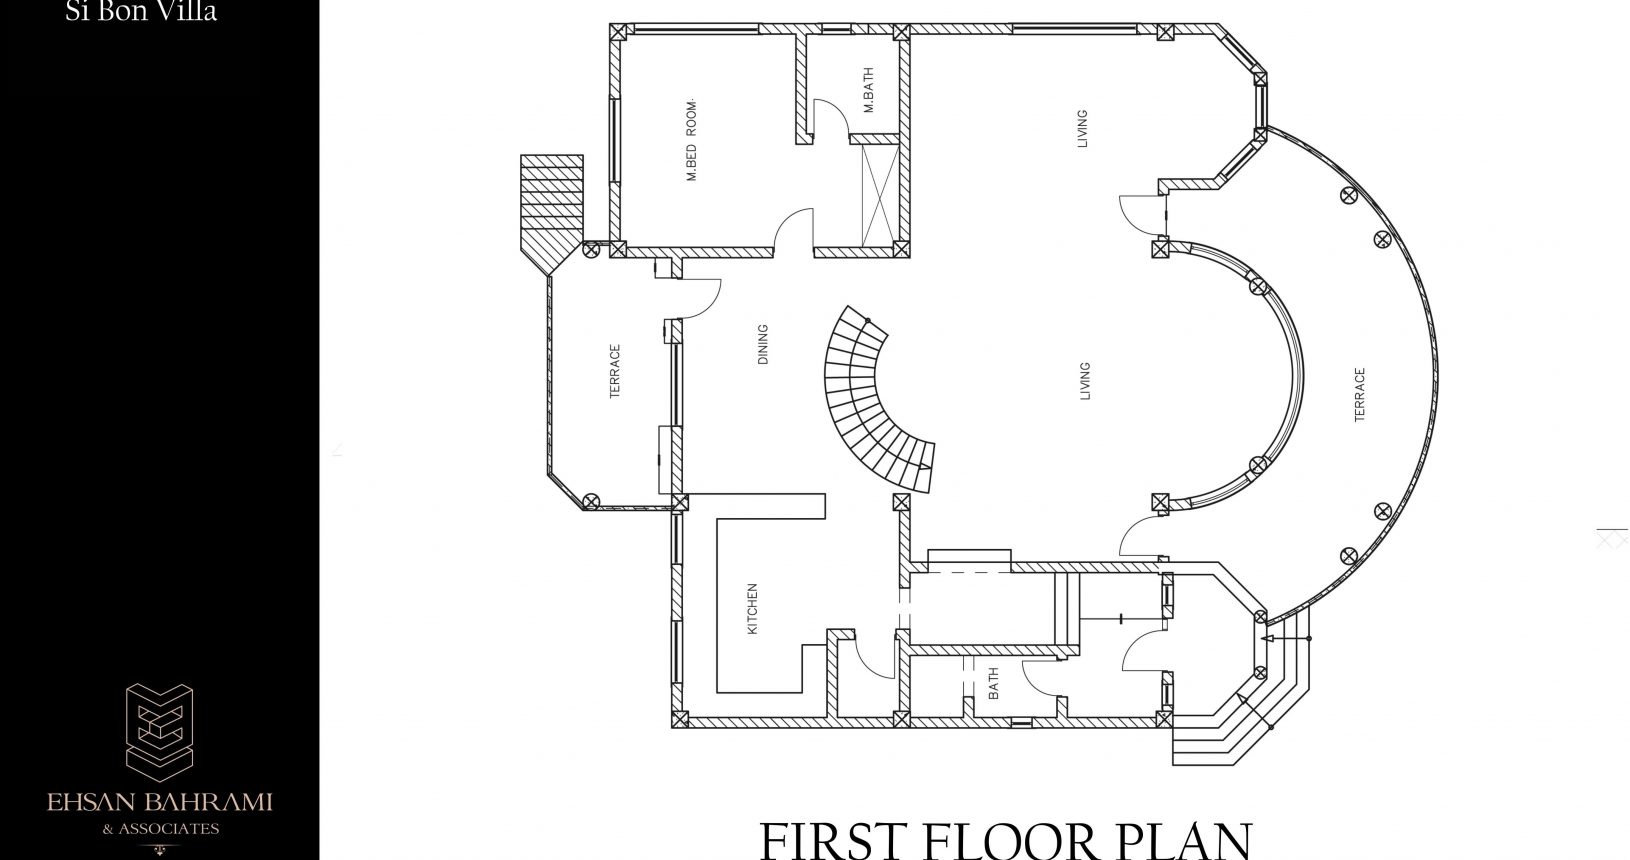 Sibon Villa first floor plan